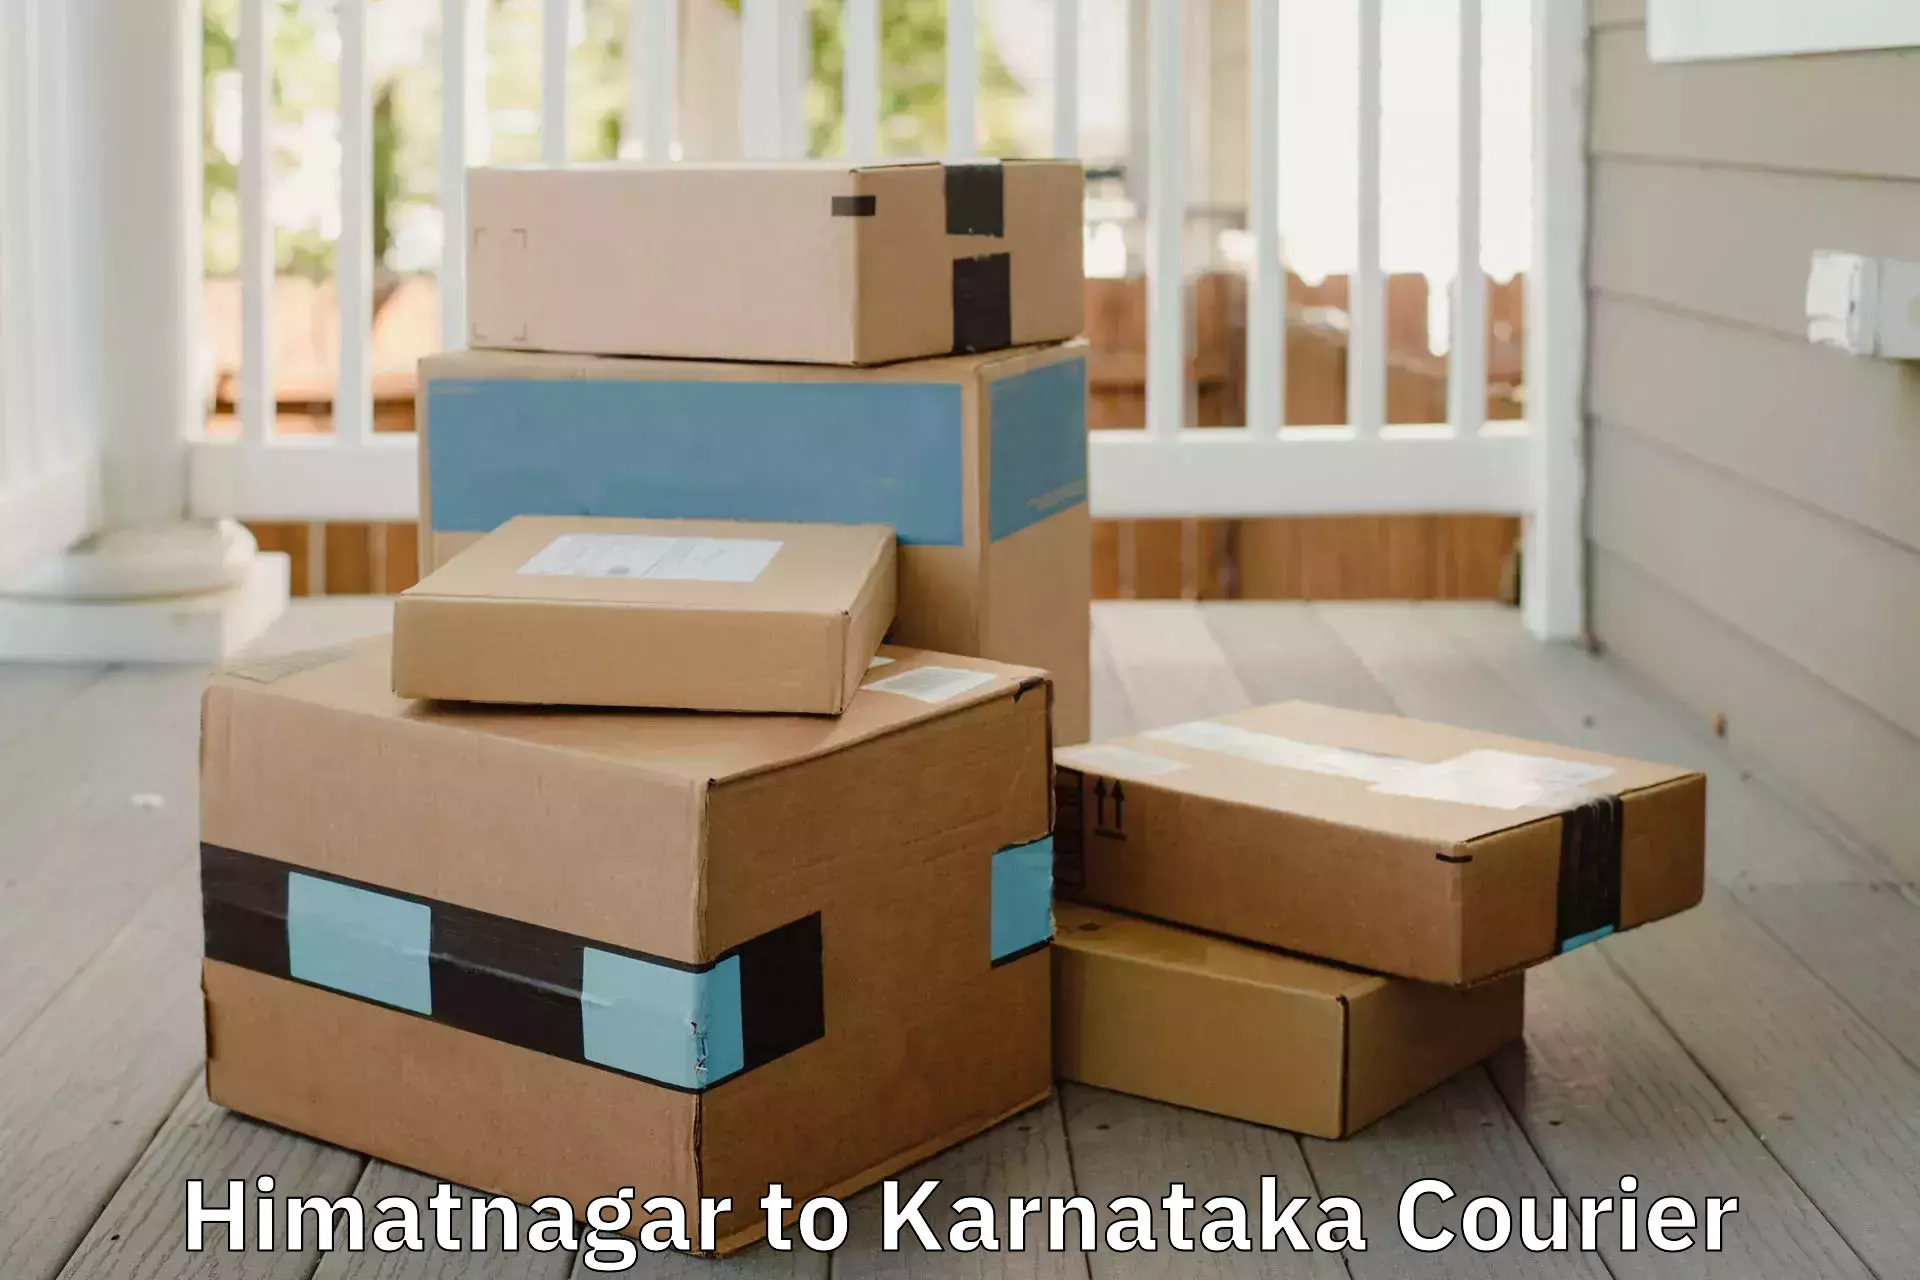 Tailored furniture transport Himatnagar to Karnataka